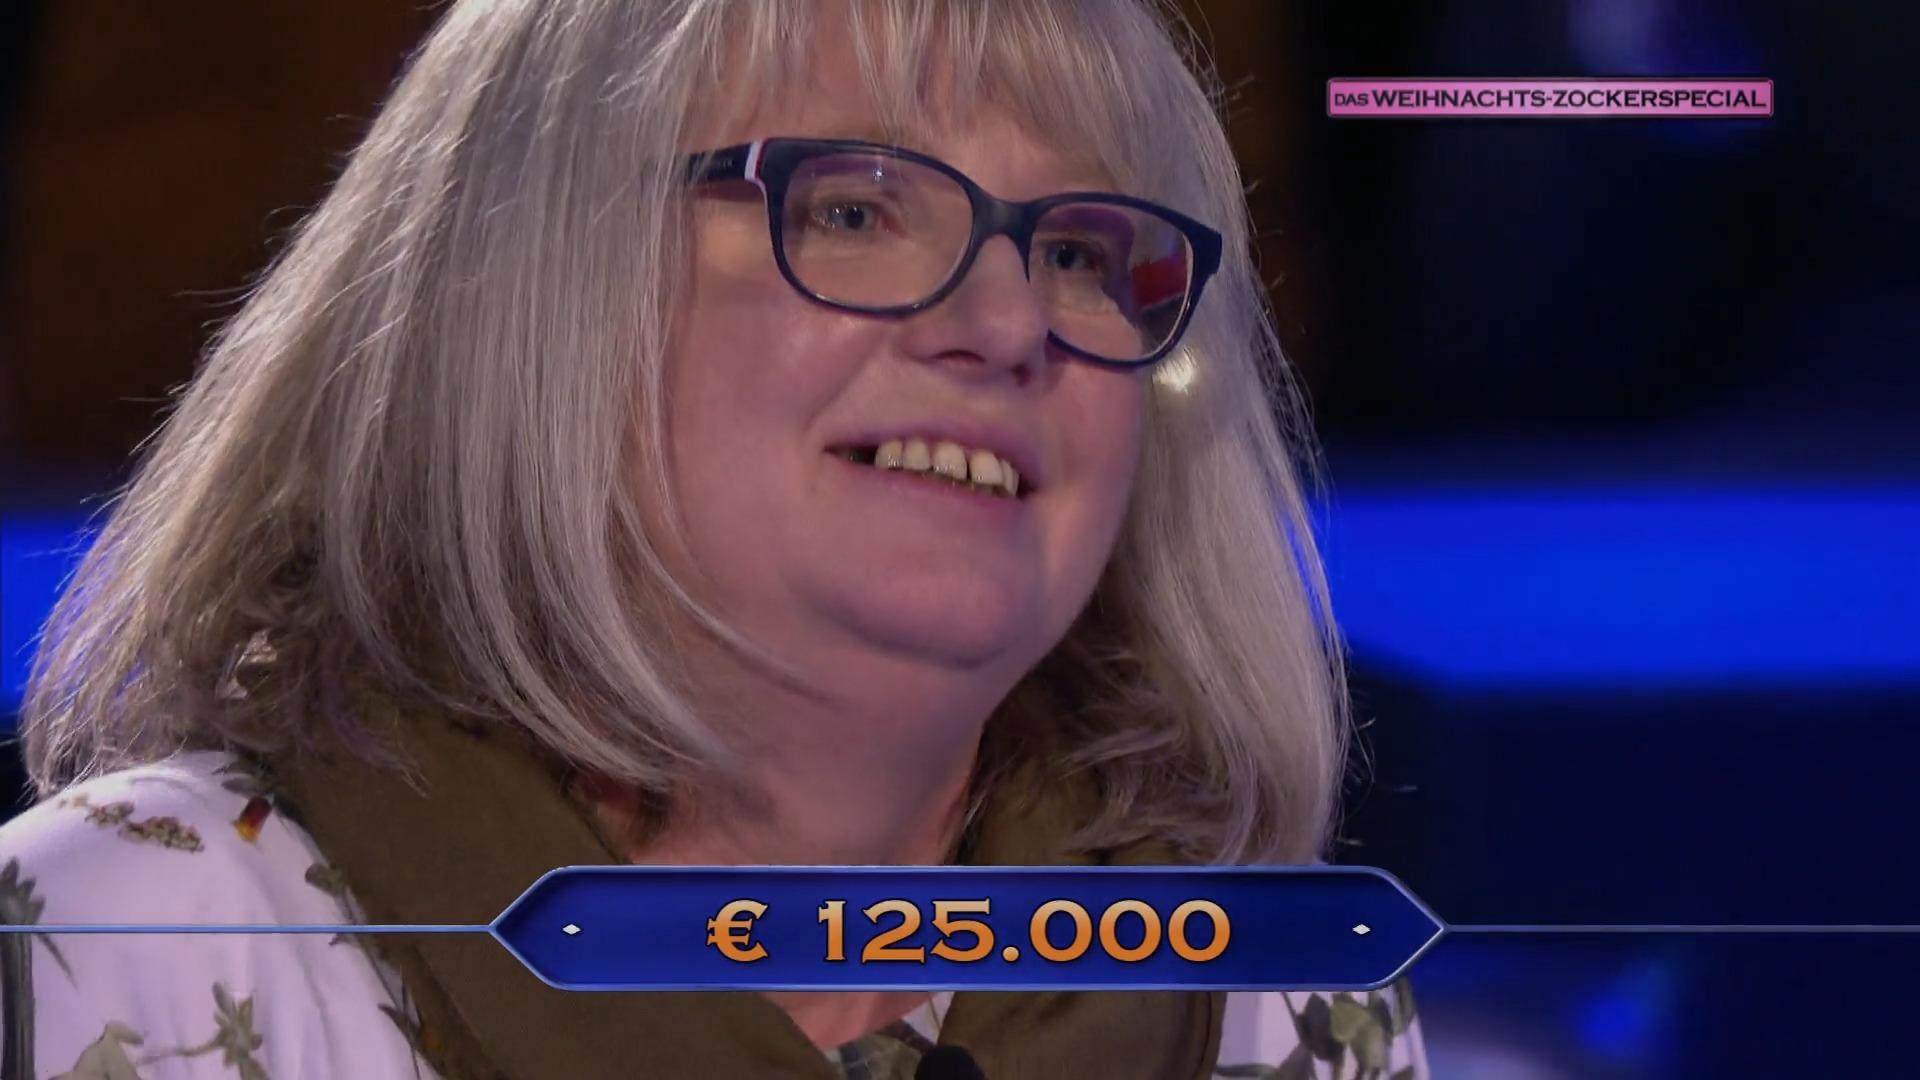 125.000 Euro! Sie holt den Höchstgewinn des Abends WWM-Weihnachts-Zockerspecial: Alles im Fluss